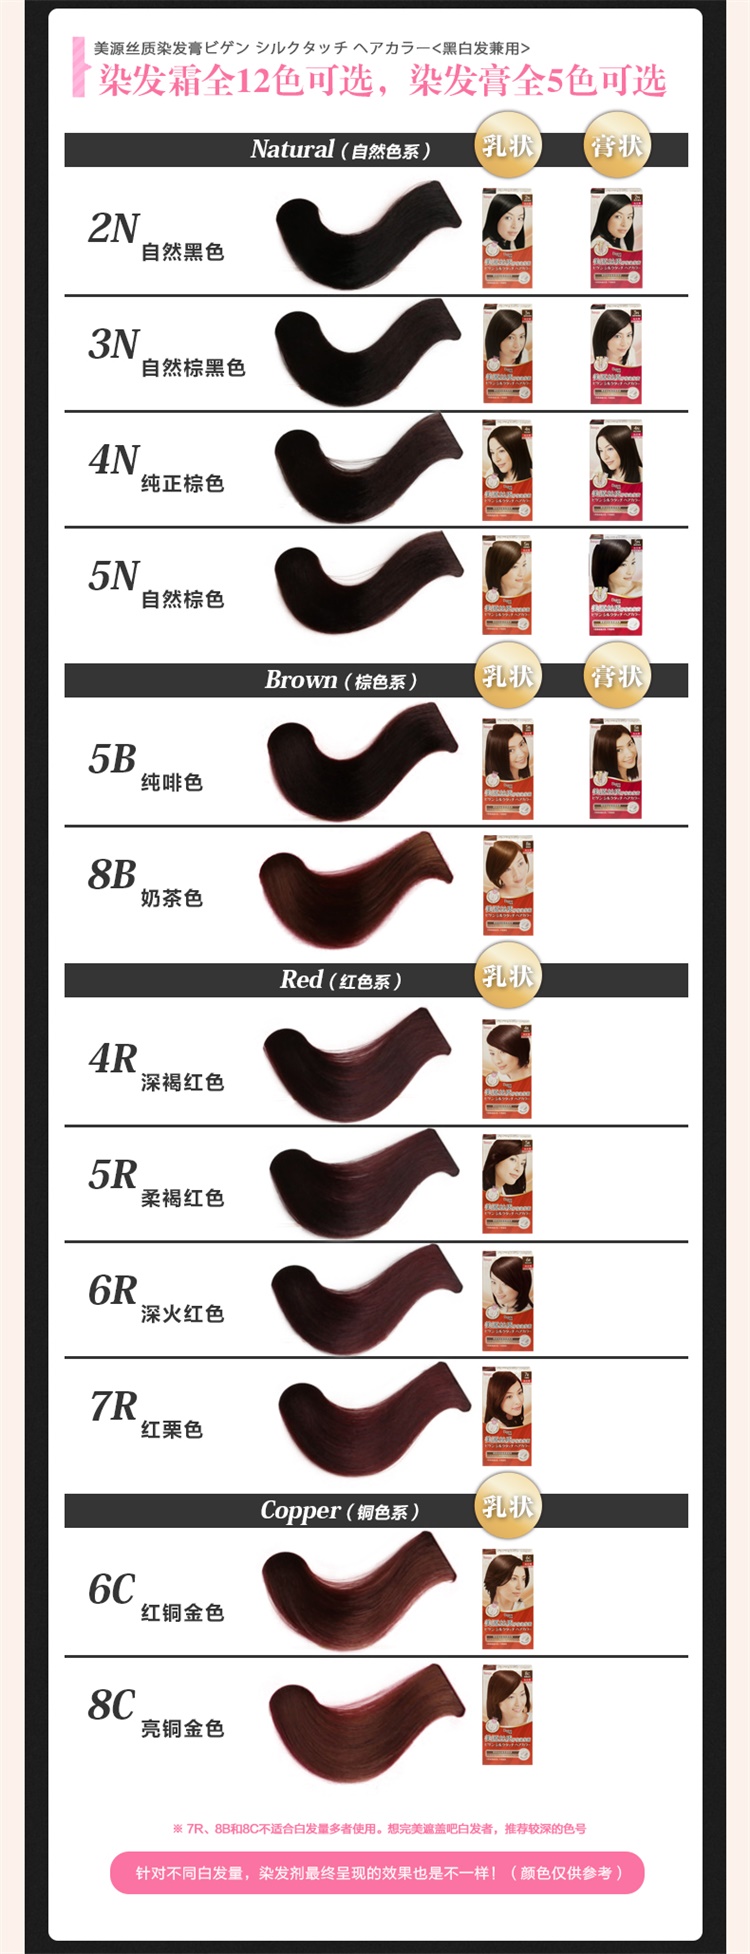 【国内贸易】日本美源丝质护发染发膏自然棕黑色3N(40g+40g)遮白发染发剂(图8)